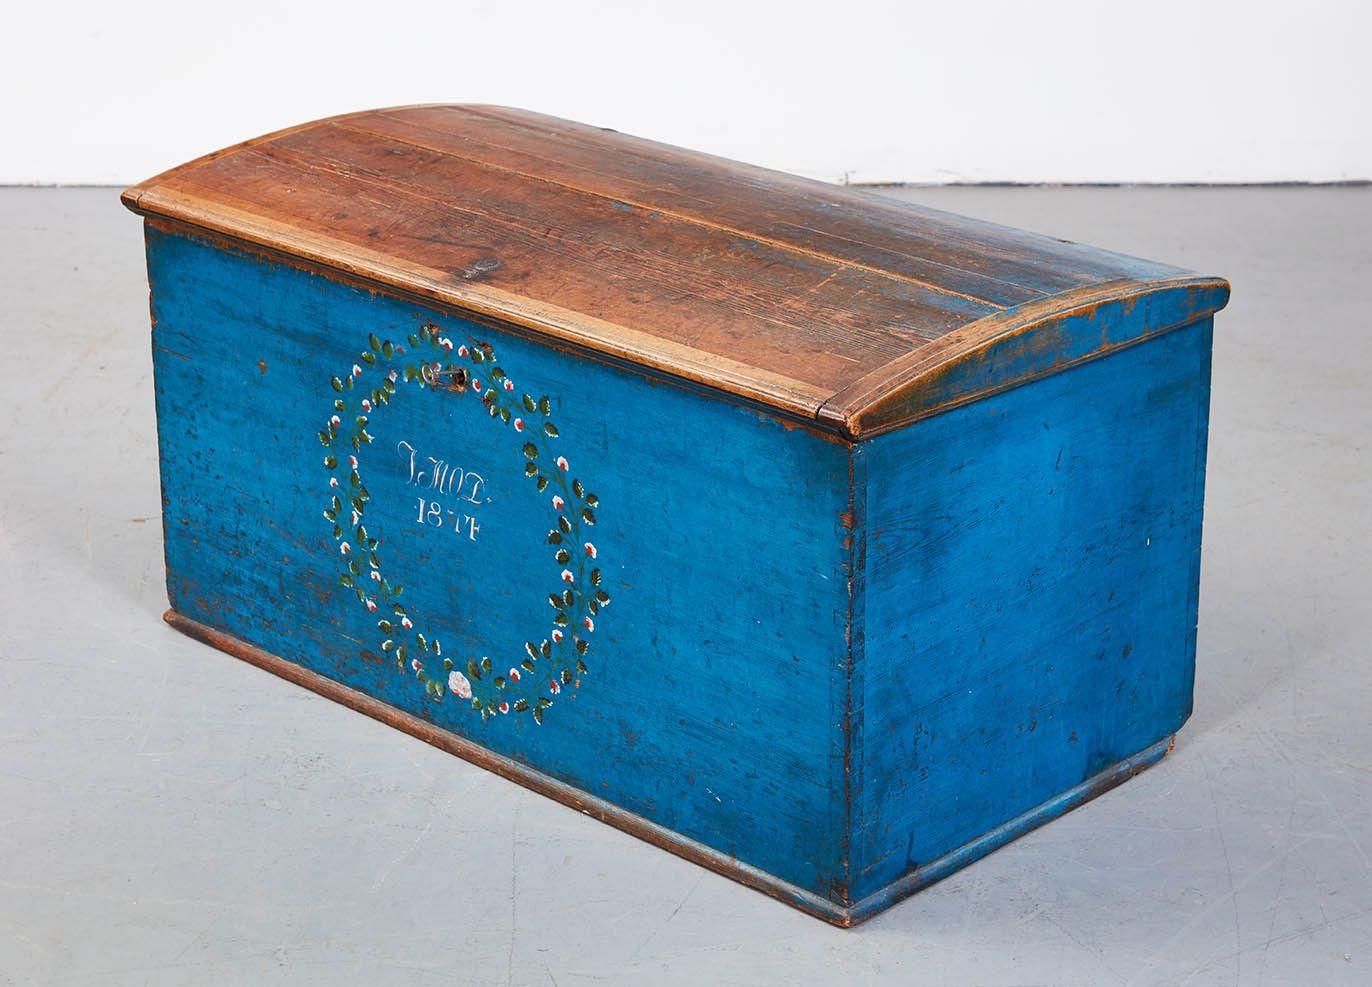 Merveilleux coffre à mariage scandinave peint en bleu au 19e siècle, portant les initiales du propriétaire et daté de 1874, le dessus bombé avec des extrémités clivées, la boîte à queue d'aronde avec une boîte à bougies à l'intérieur qui sert